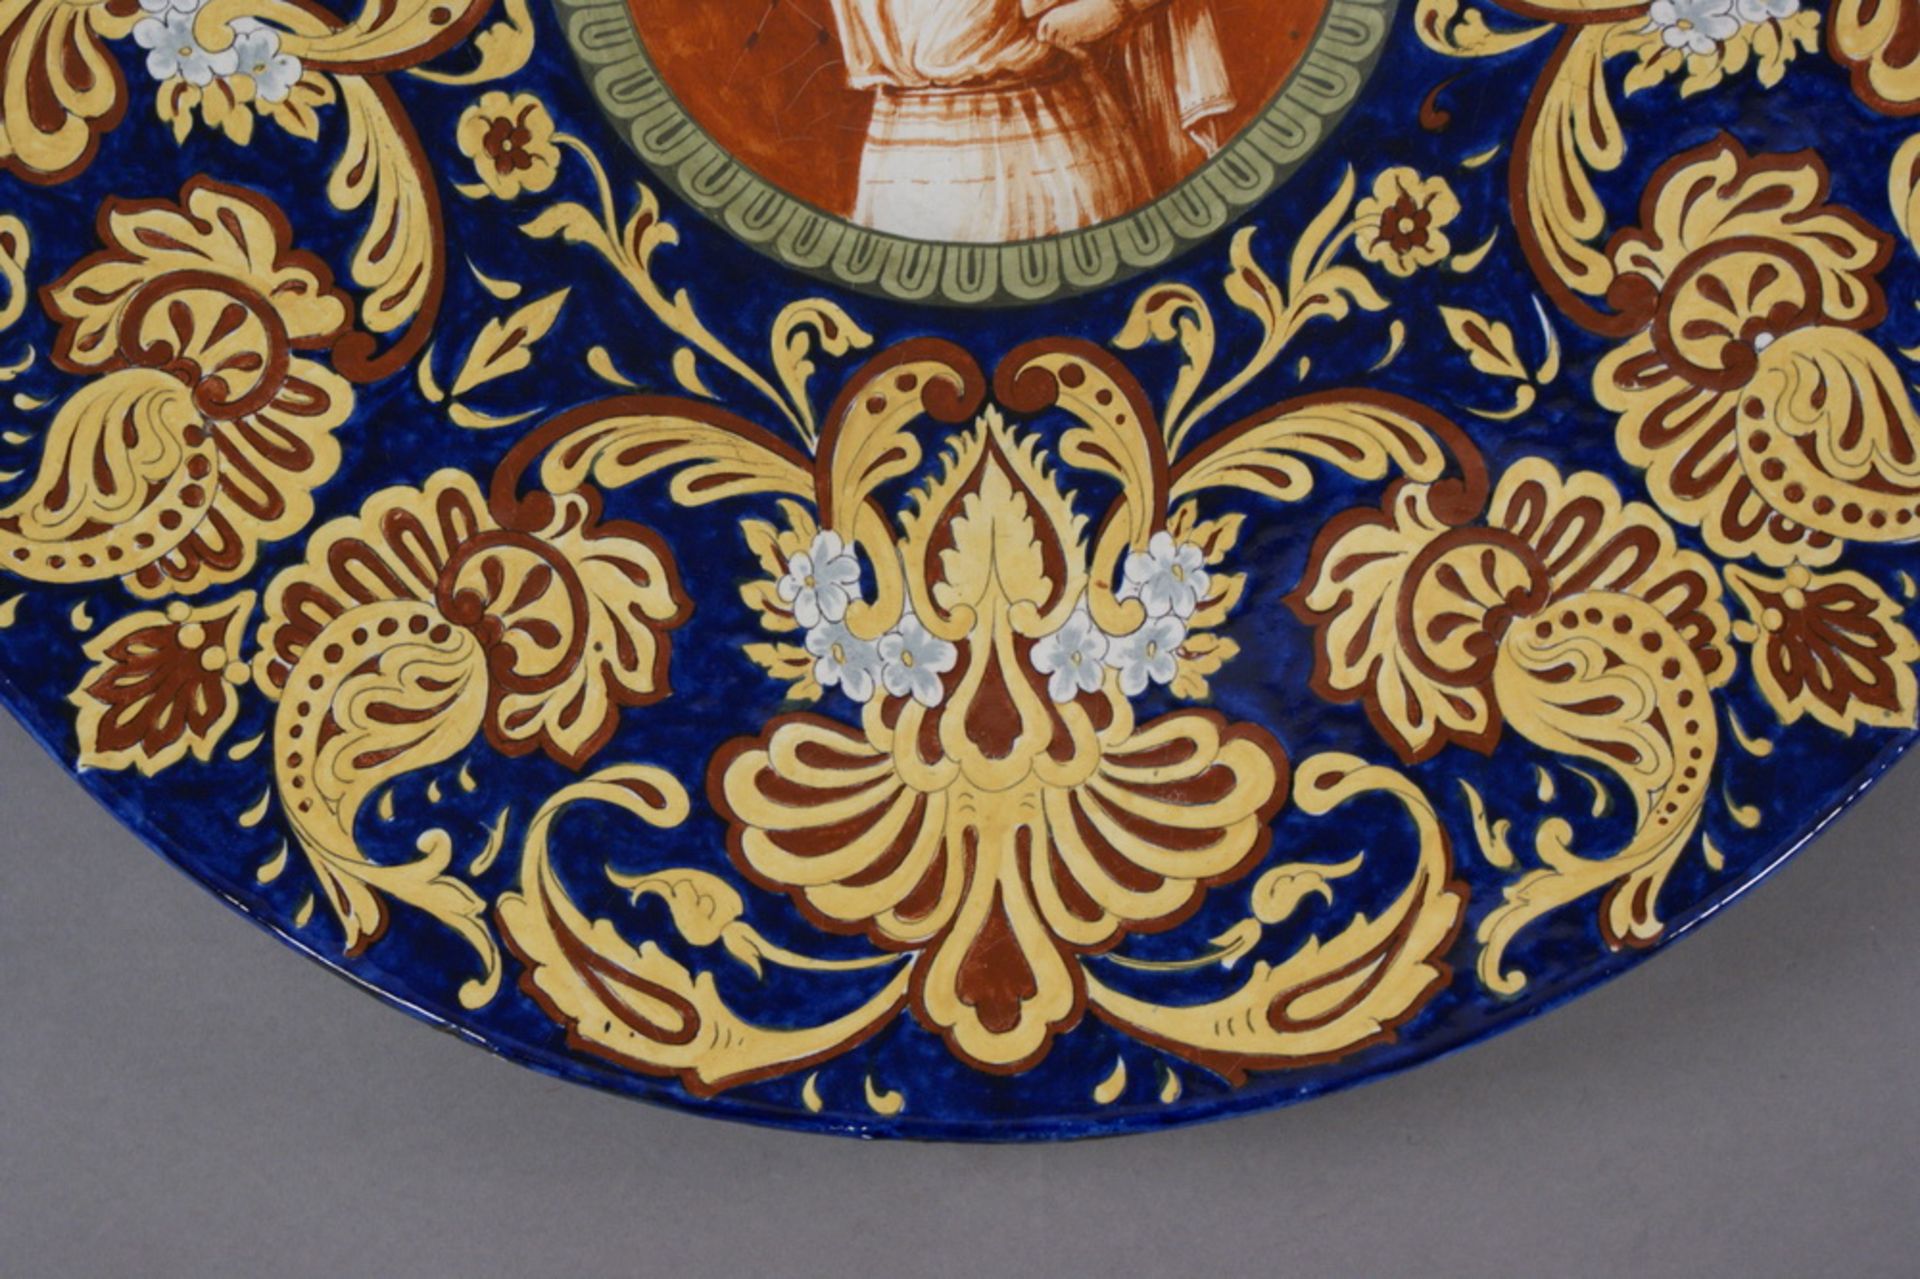 GROSSER SCHAUTELLER Keramik, bunt glasiert, Rückseitig bezeichnet, Restauriert, besch.,Durchmesser - Bild 4 aus 5